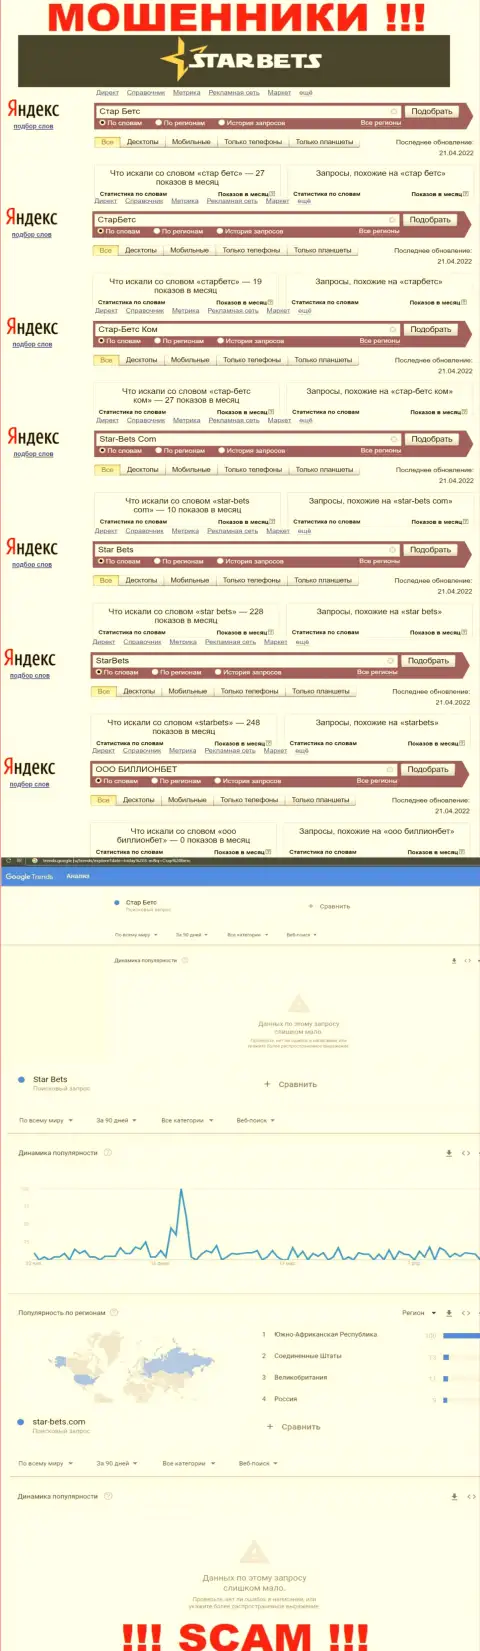 Скриншот итога запросов по незаконно действующей компании СтарБетс